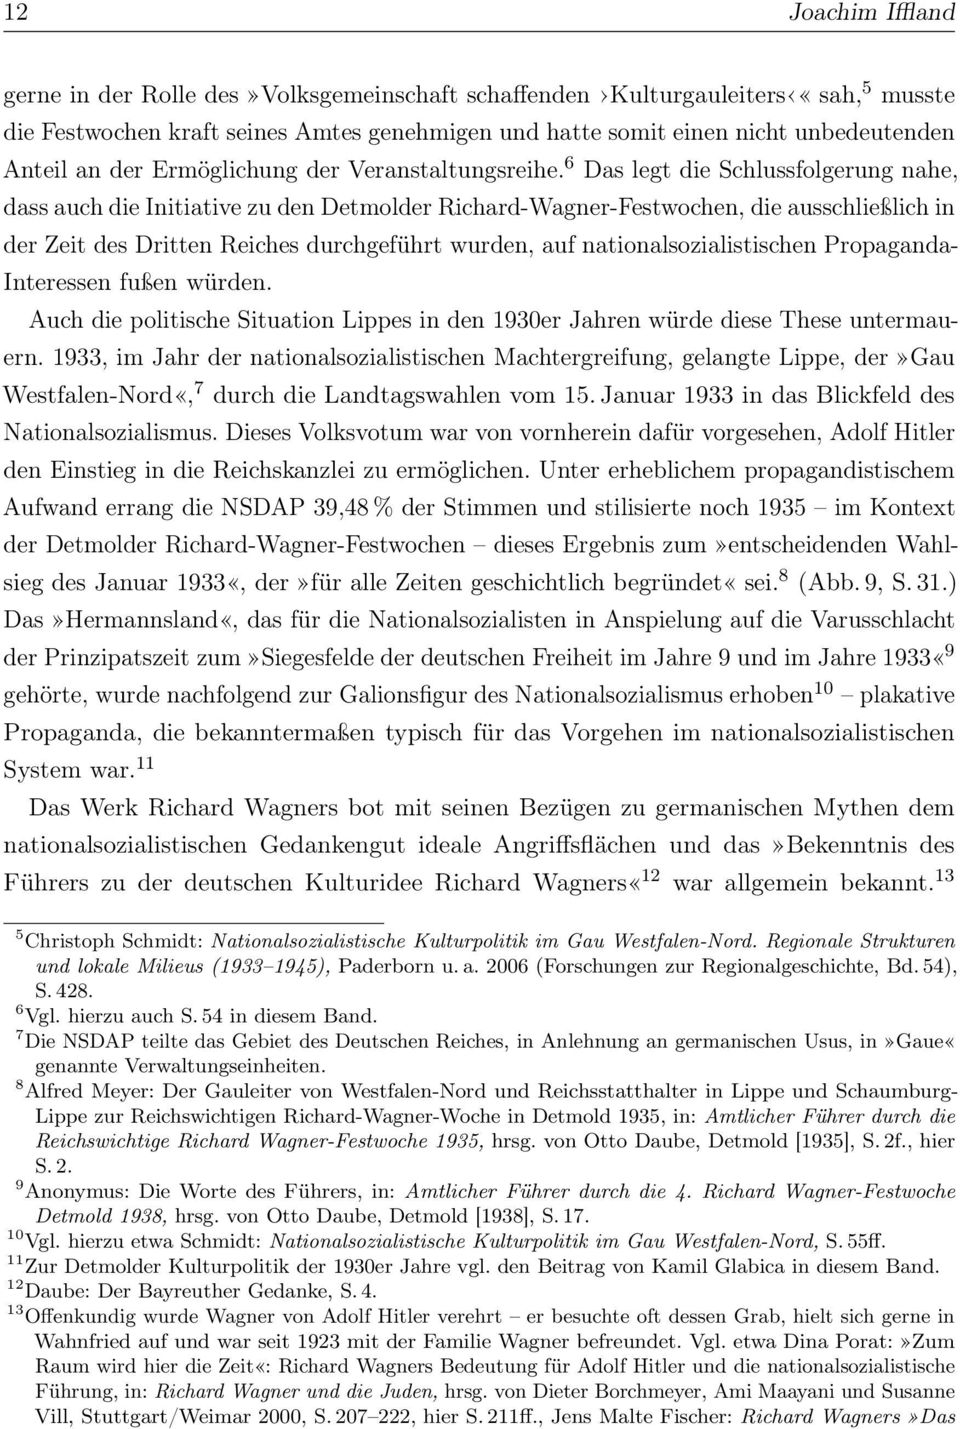 6 Das legt die Schlussfolgerung nahe, dass auch die Initiative zu den Detmolder Richard-Wagner-Festwochen, die ausschließlich in der Zeit des Dritten Reiches durchgeführt wurden, auf